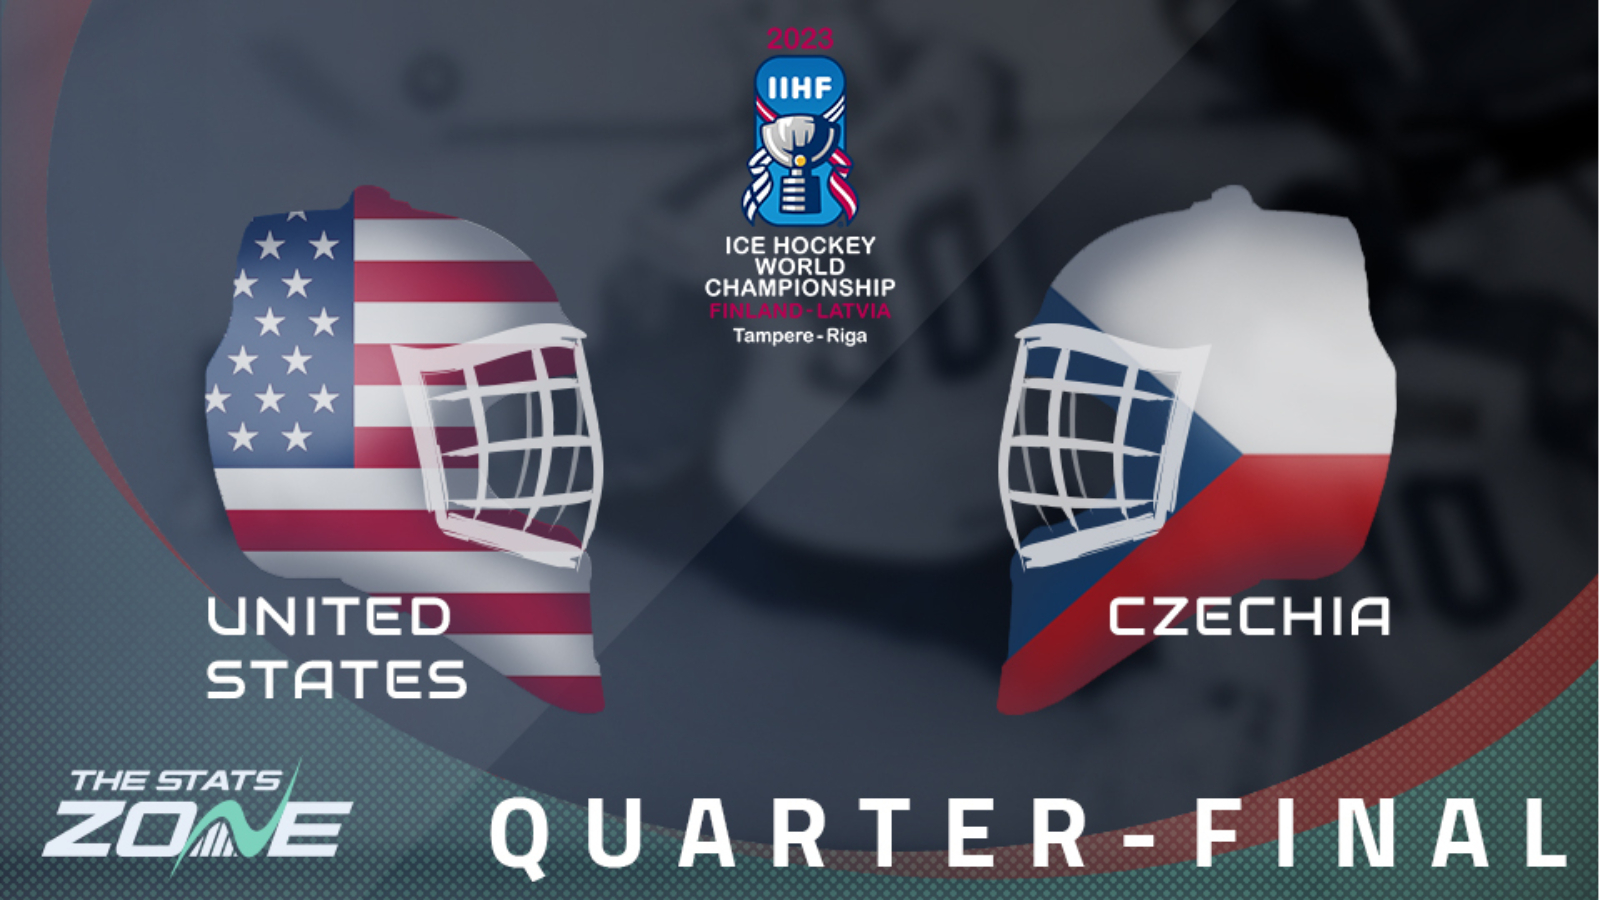 United States vs Czechia – Quarter-Final